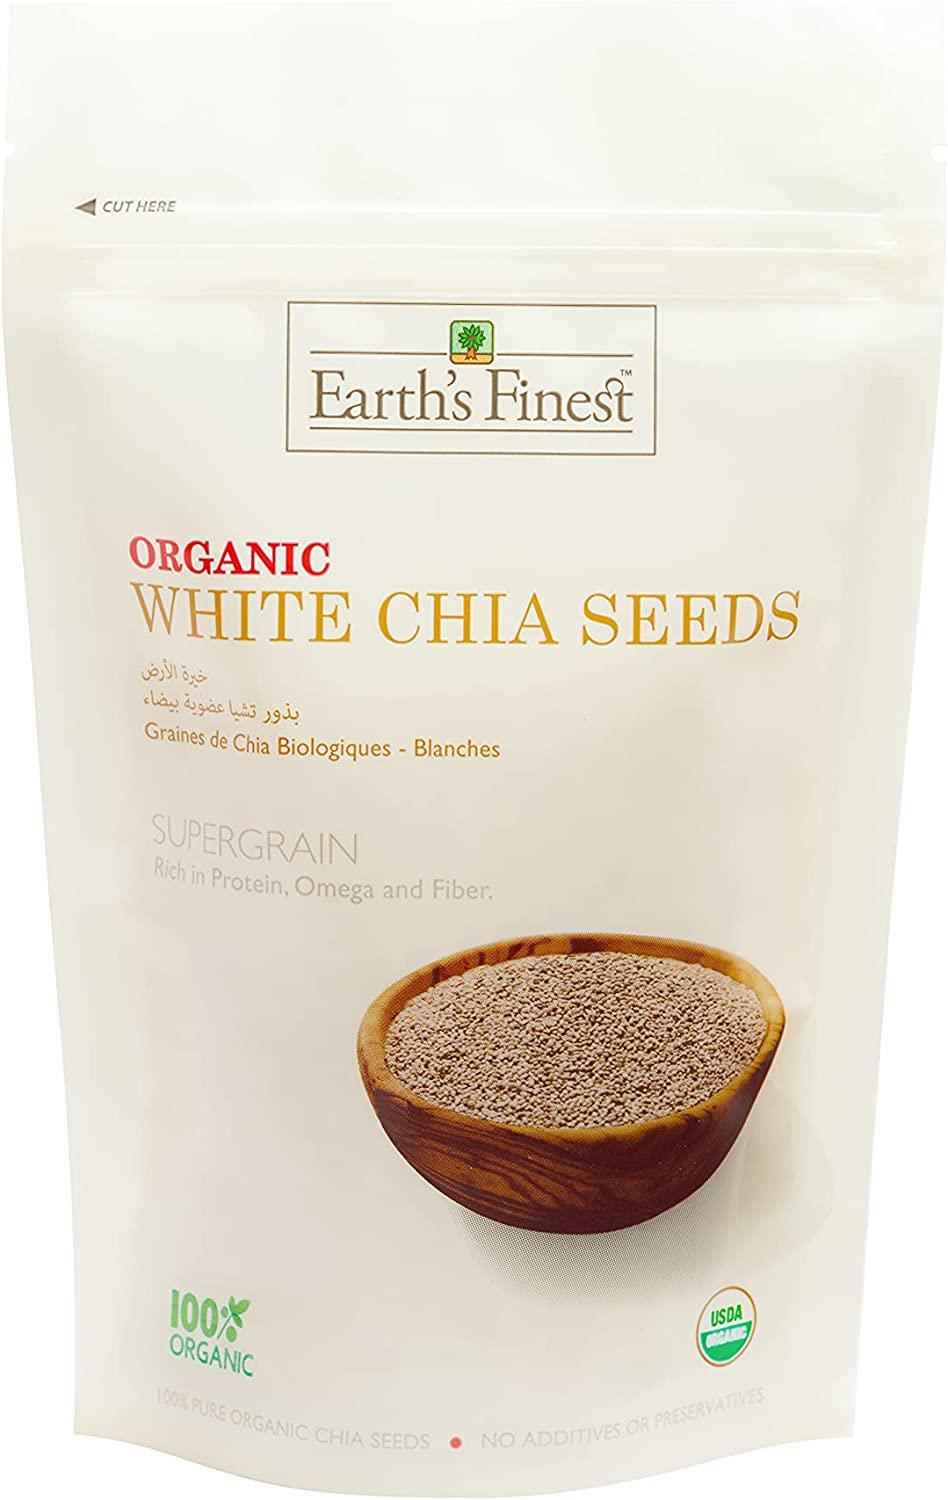 Chia (Organic) - Bulk Grains & Foods